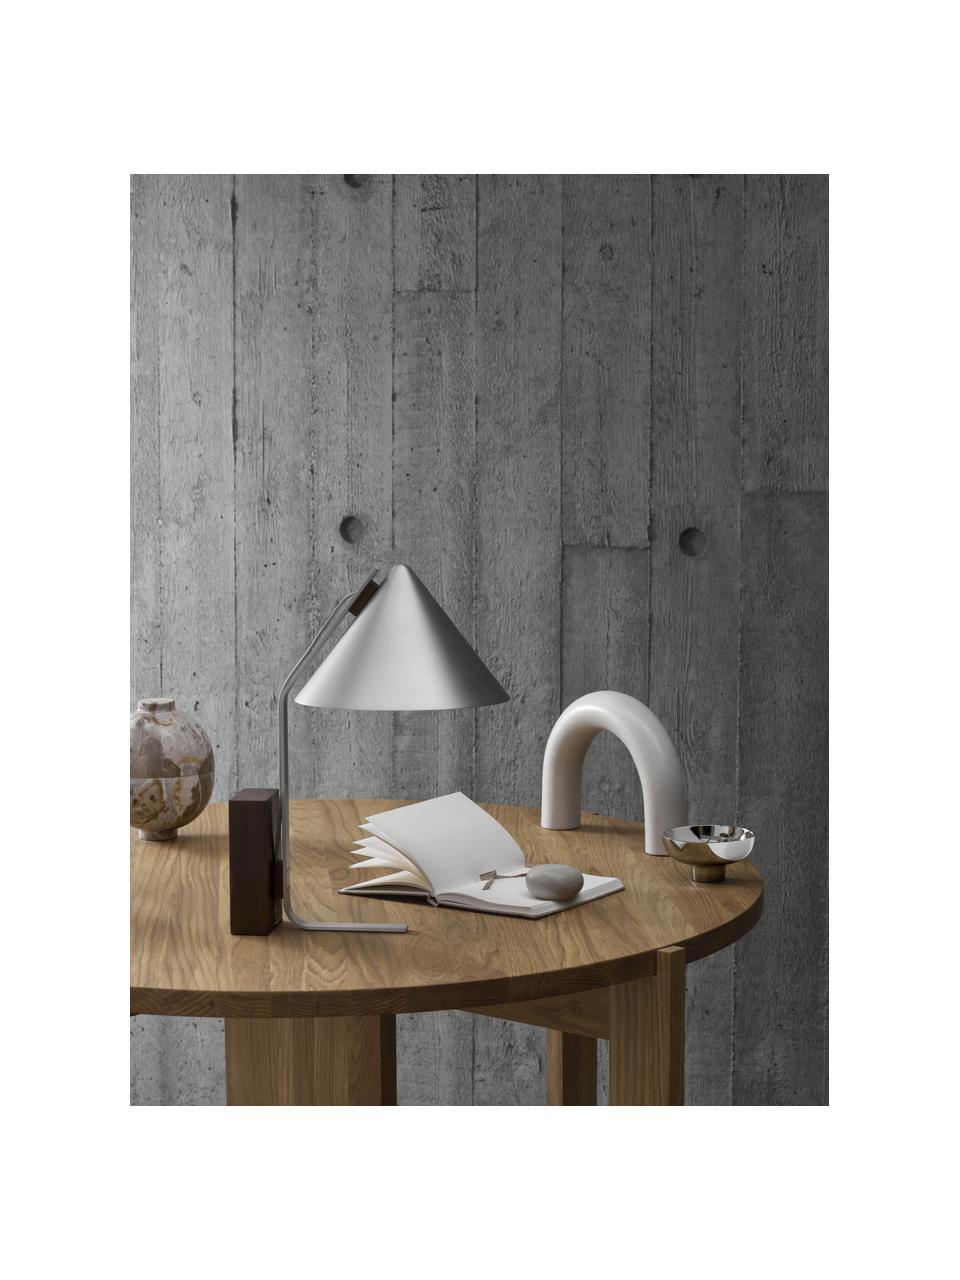 Tischlampe Cone, Lampenfuß: Walnussholz, geölt, Silberfarben, Ø 25 x H 44 cm